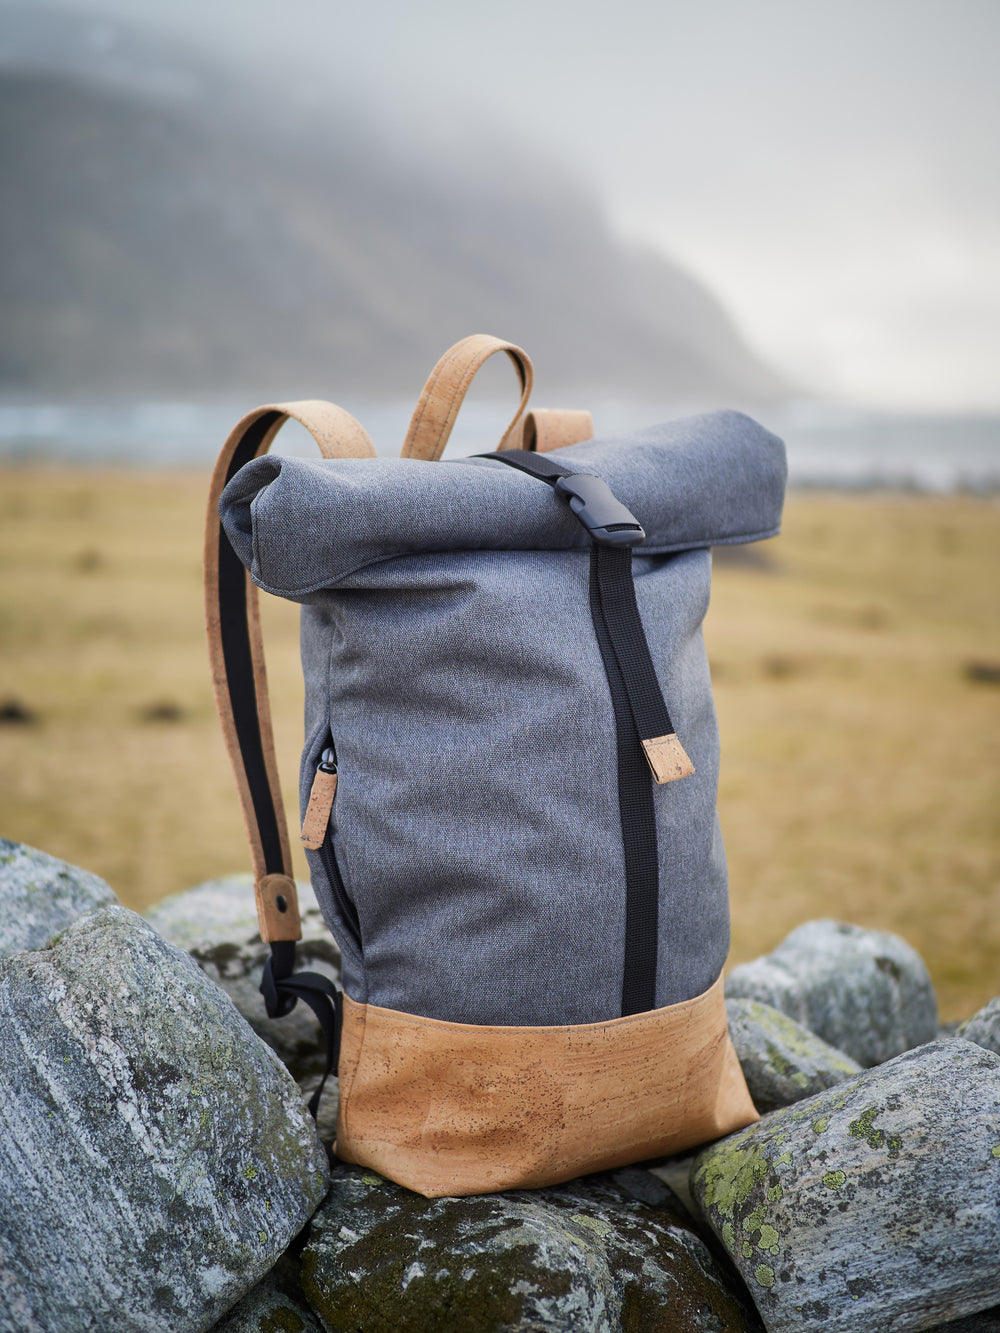 Grauer Rolltop Rucksack mit hellem Kork Boden steht auf Steinen mit Aussicht auf das Meer im Hintergrund